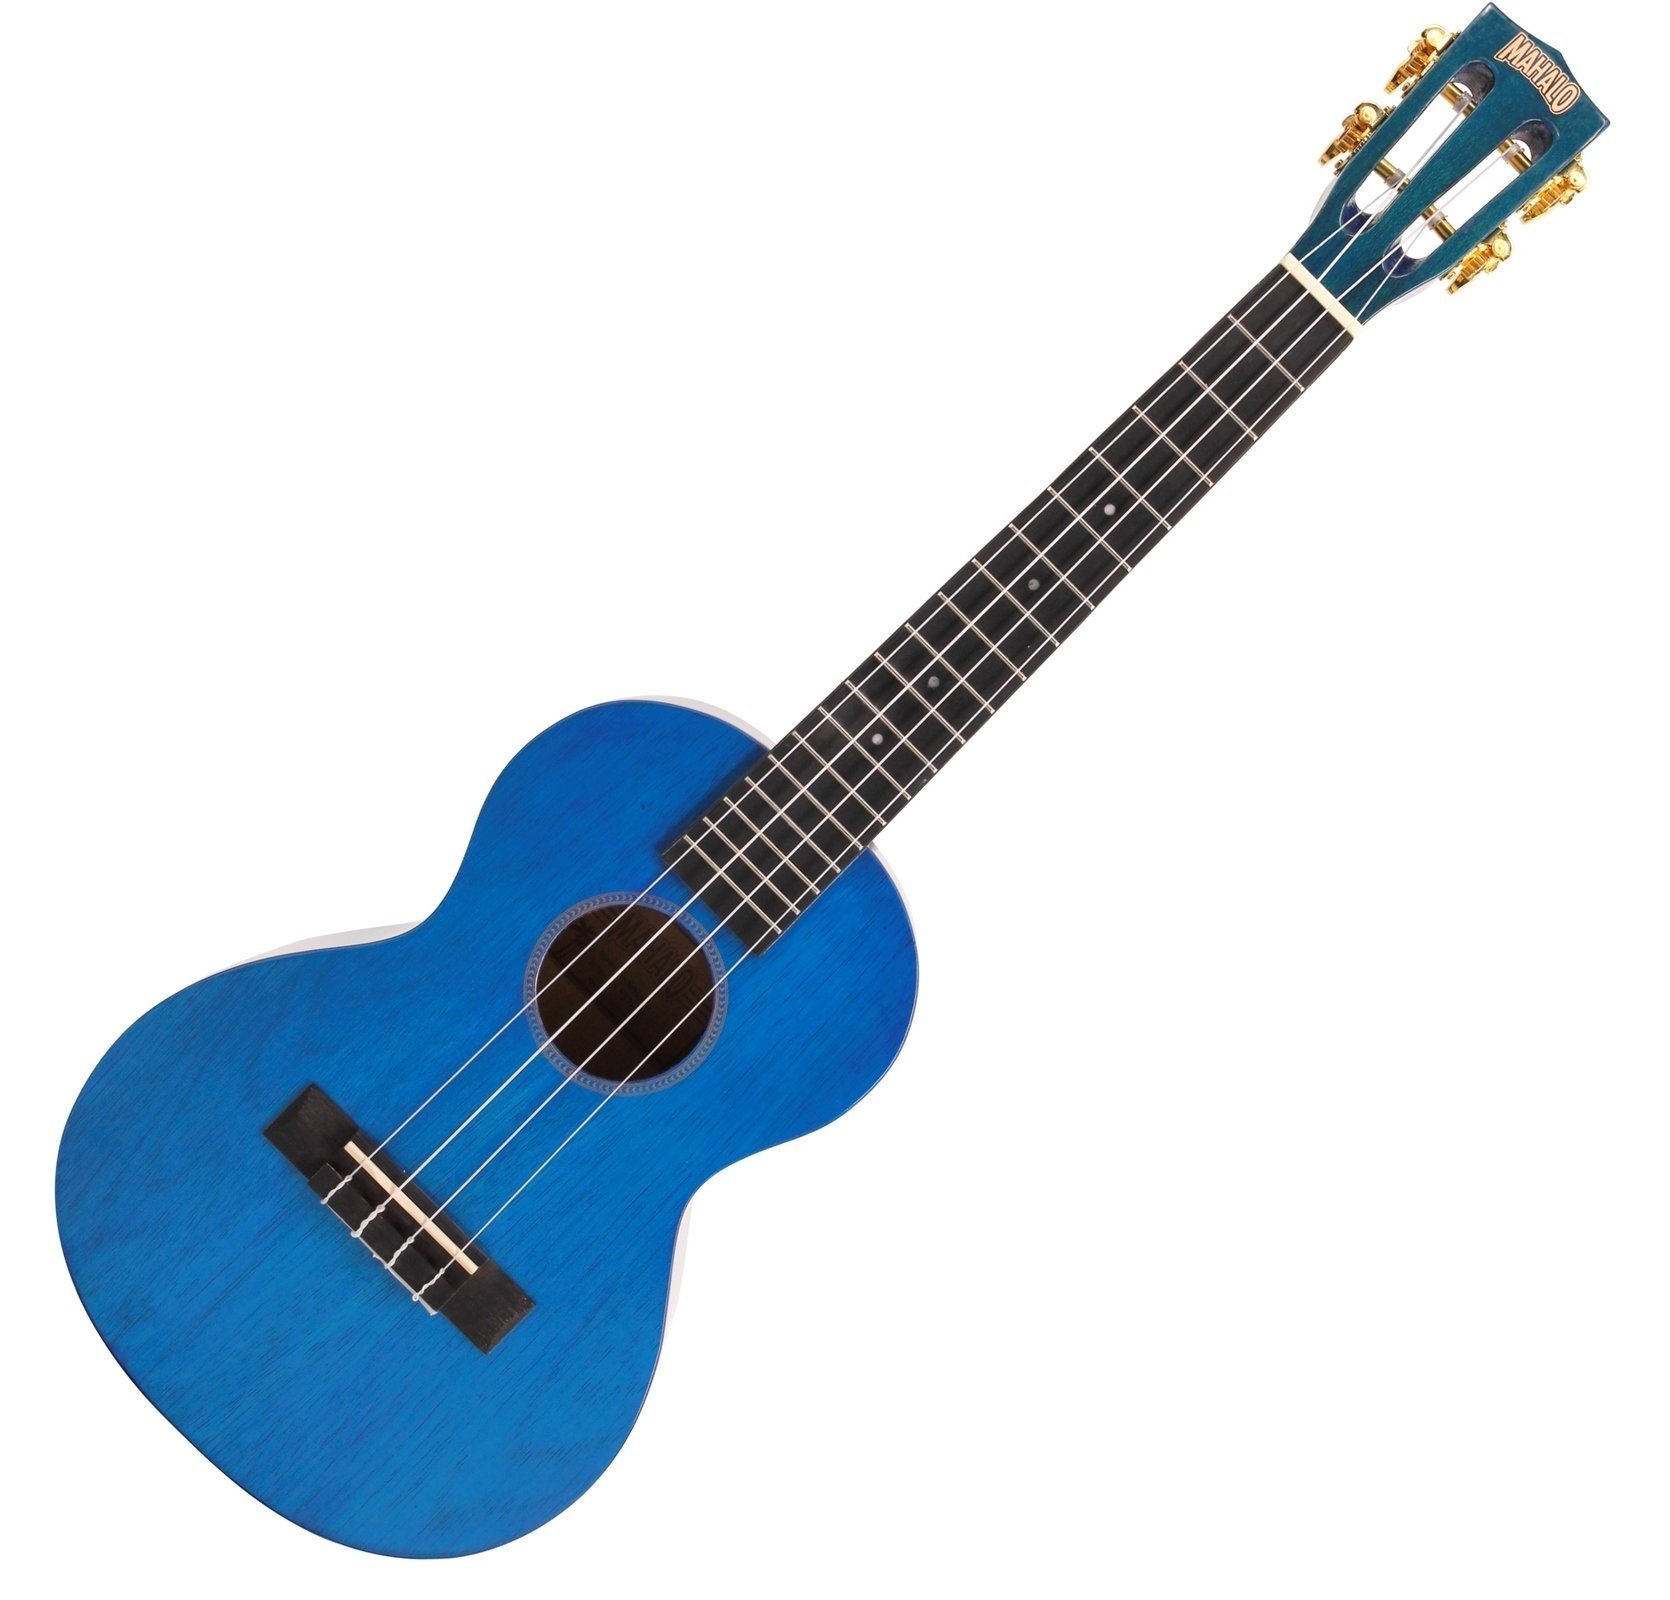 Tenori-ukulele Mahalo Tenor Ukulele Transparent Blue